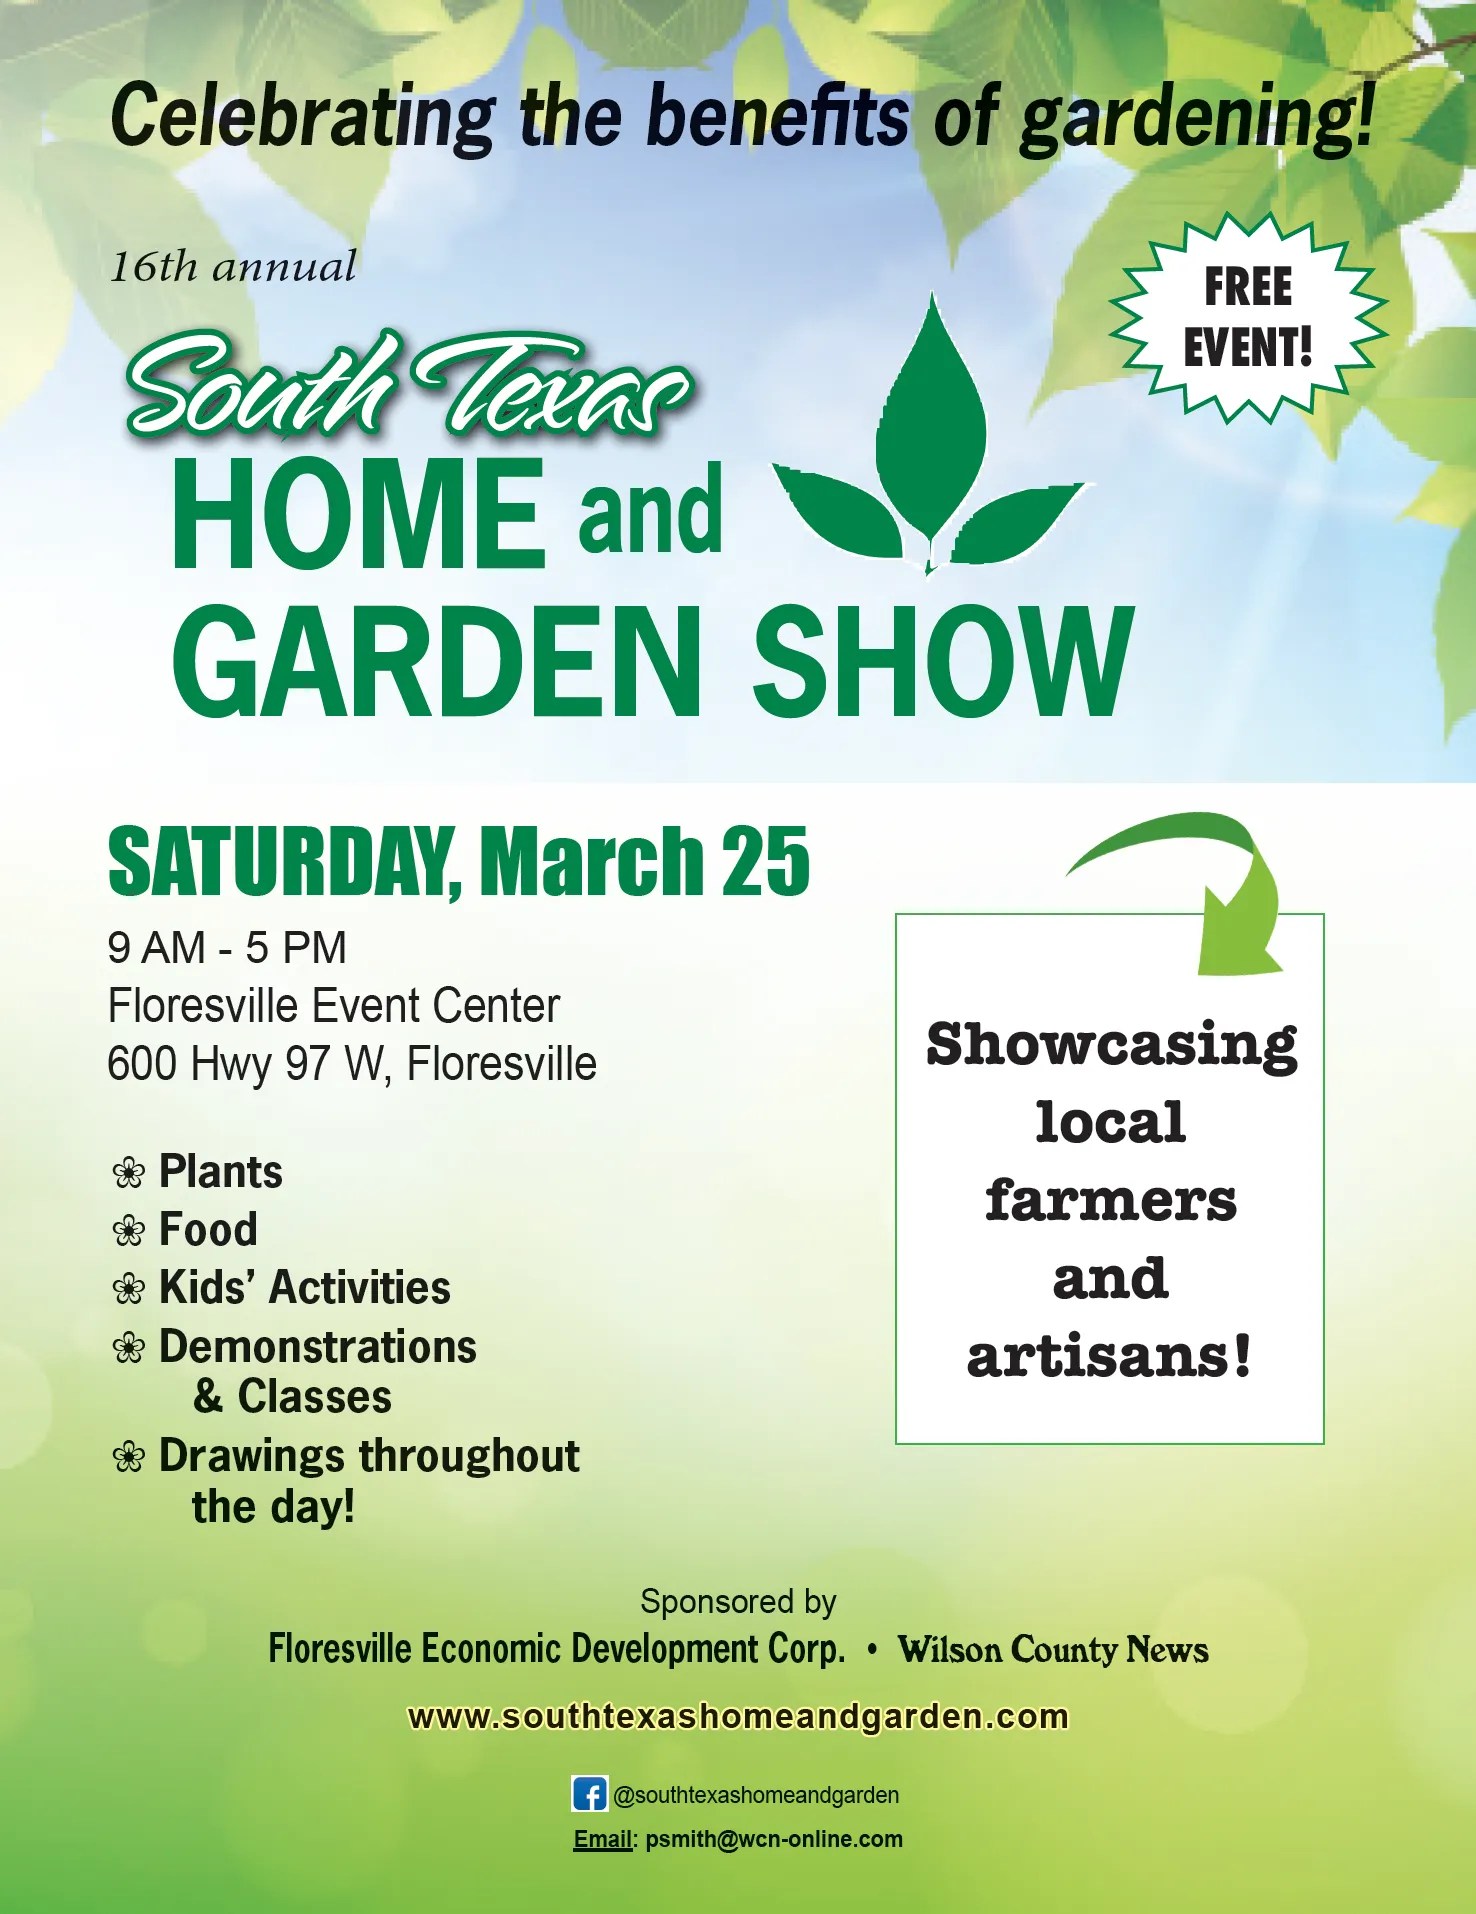 South Texas Home & Garden Show, Floresville, Texas, March 25, 2023